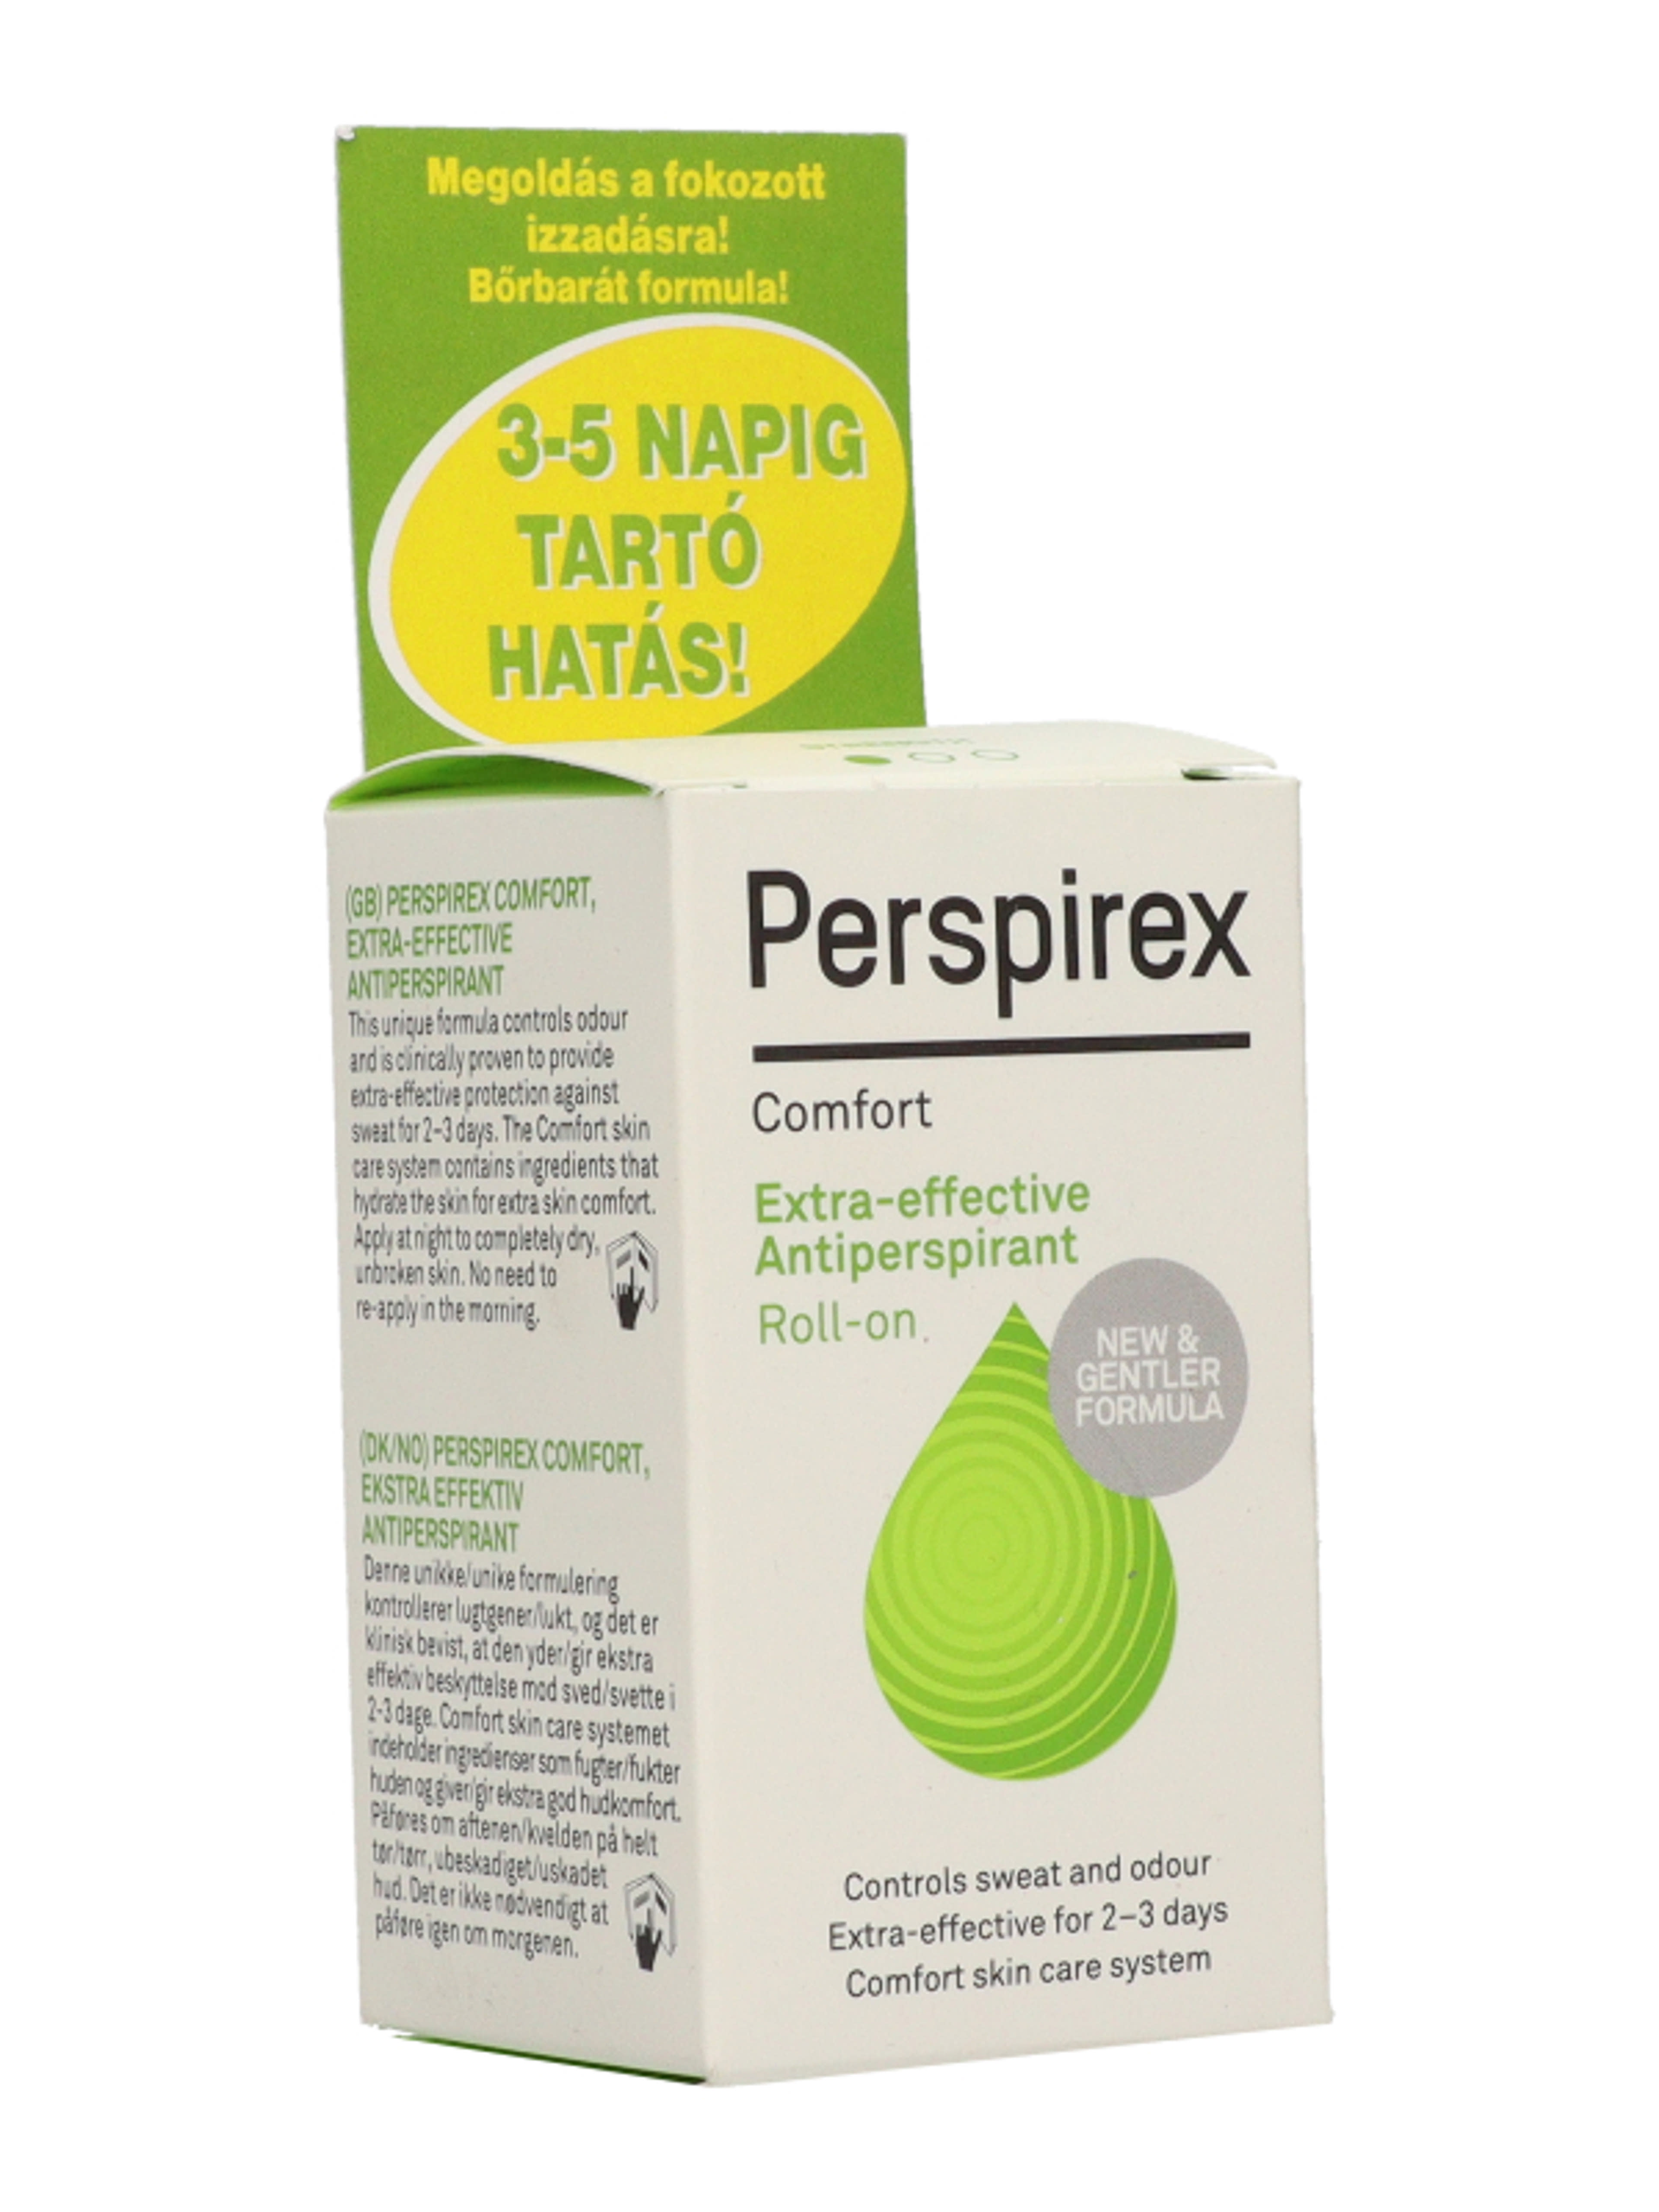 Perspirex roll-on speciális izzadásgátló Comfort - 20 ml-5